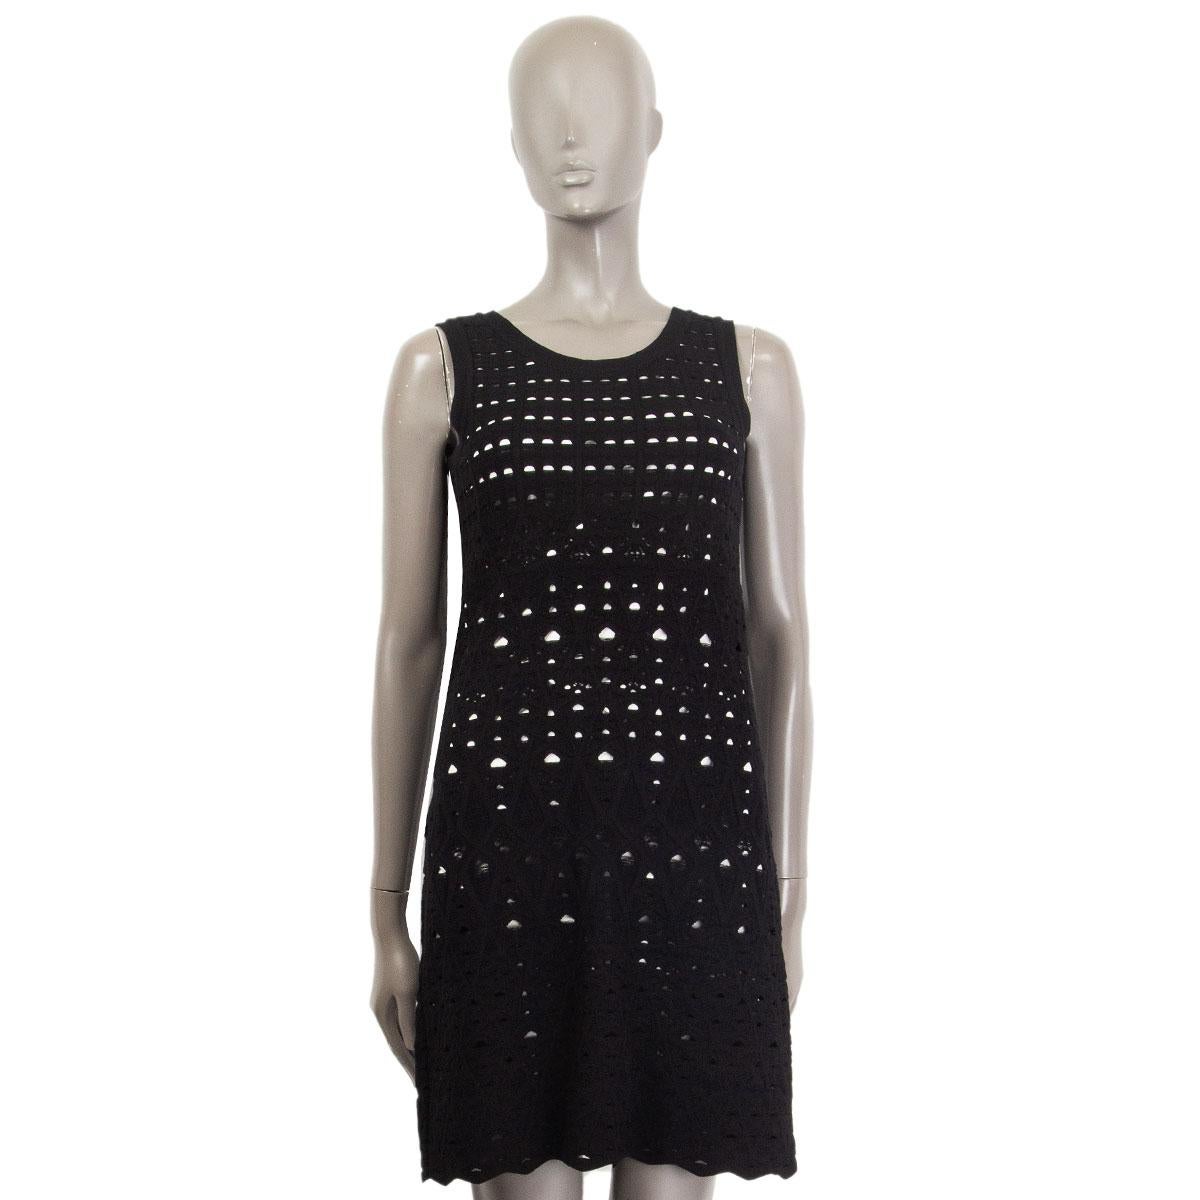 100% authentique Chanel robe évasée en crochet en viscose (67%) polyester (33%) noir et blanc avec une encolure ronde. Sans manches, tissu élastique et petit logo CC noir en haut du dos. Doublure en viscose blanche (67%) et polyester (33%). Robe à